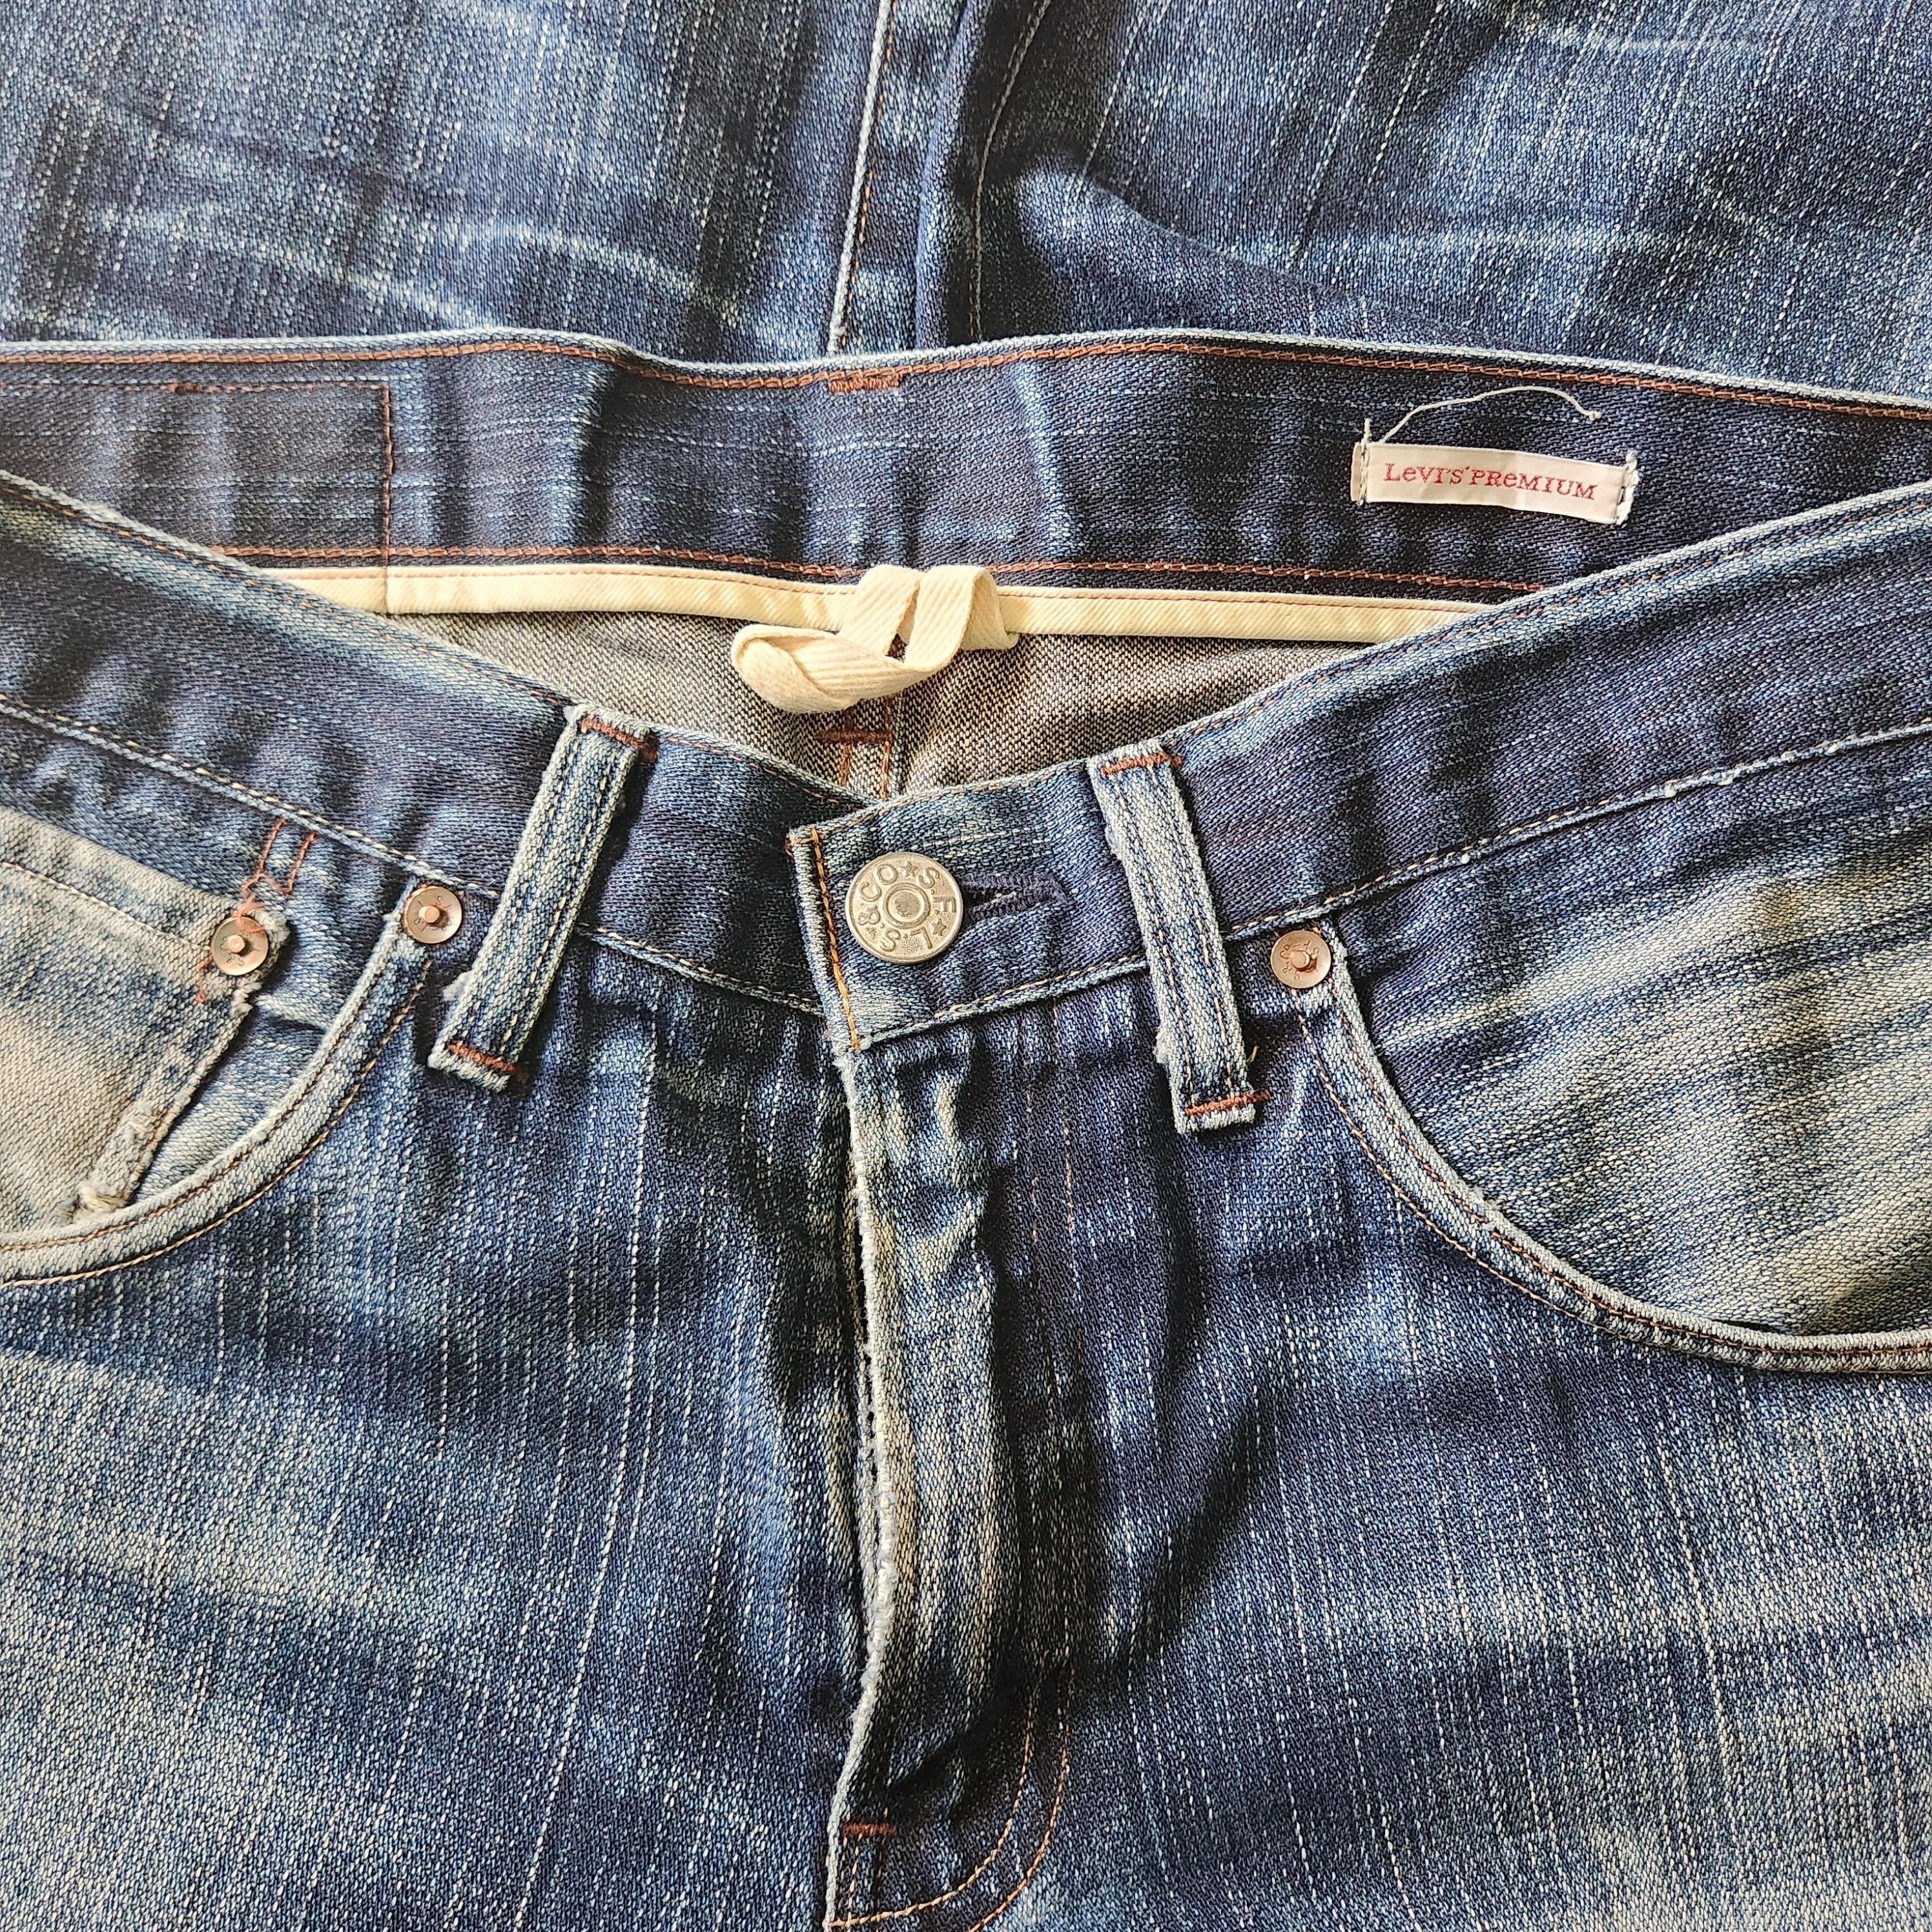 Levis 505 Premium Distressed Denim Jeans - 6